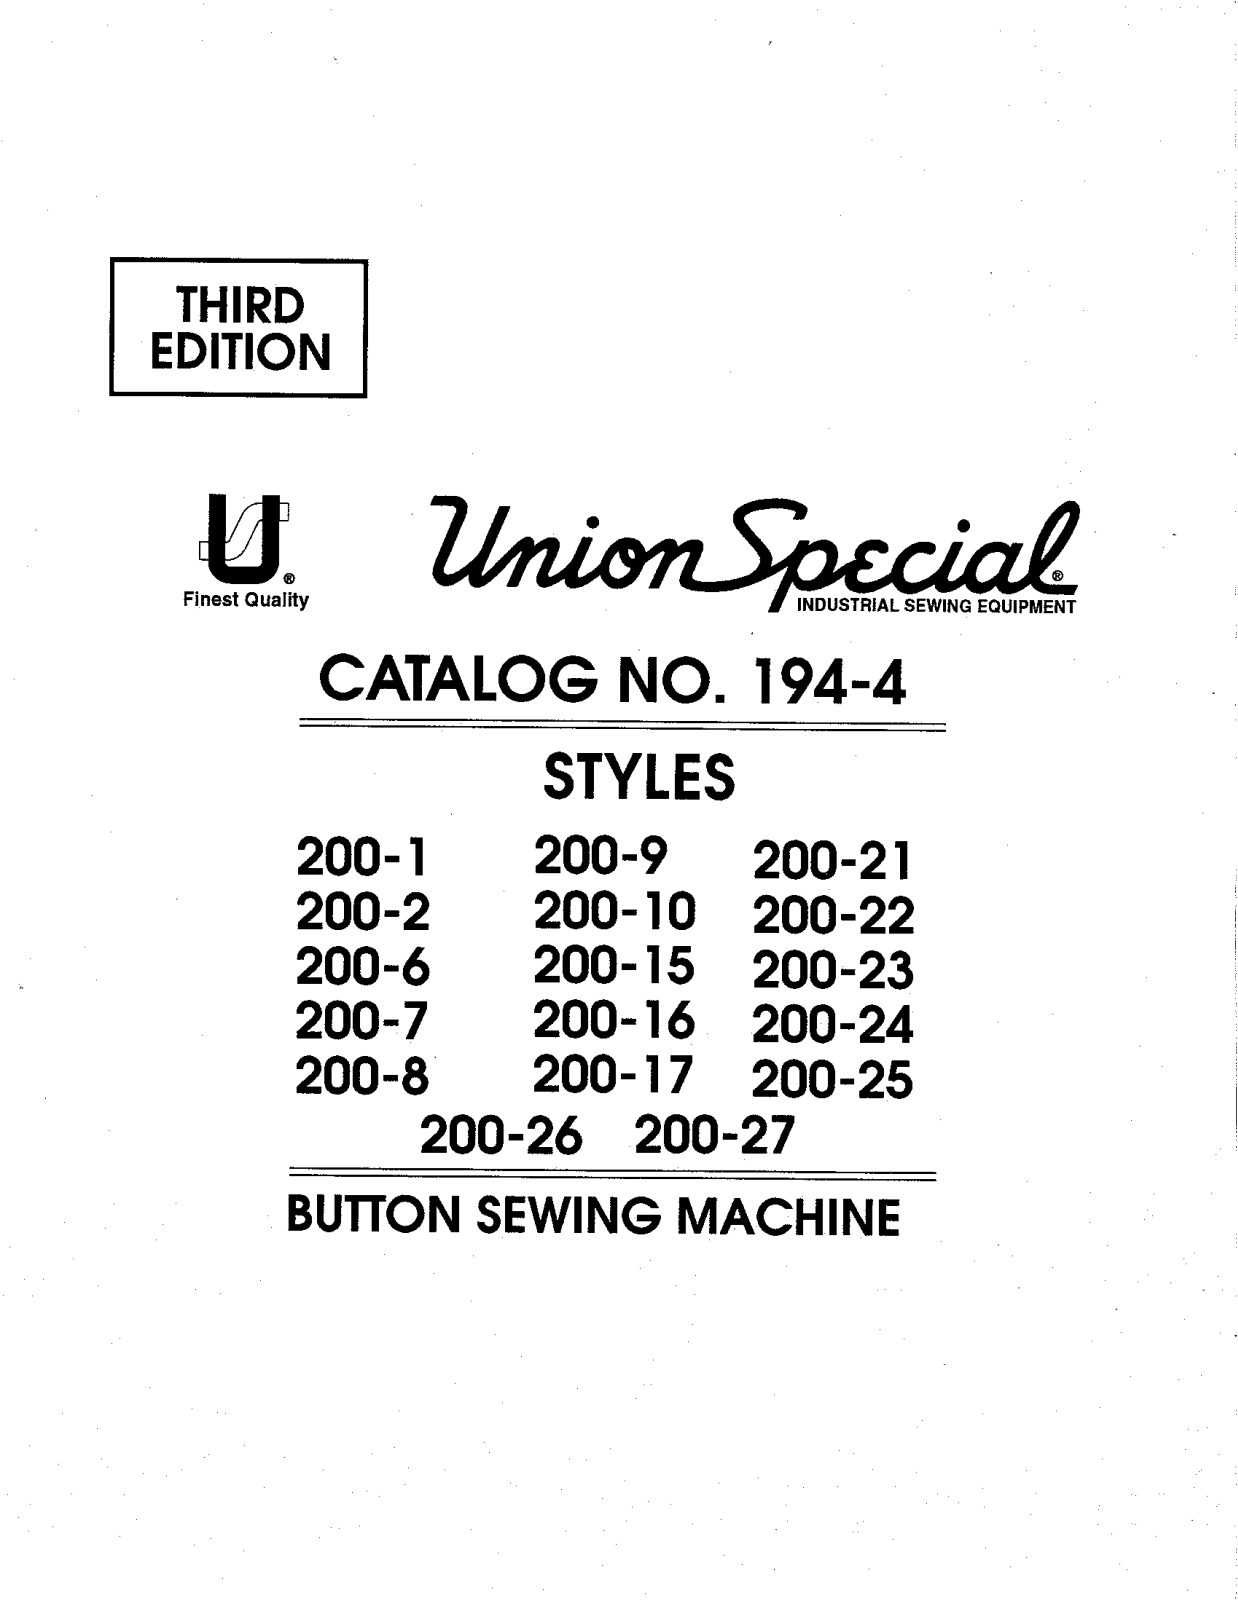 Union Special 200-1, 200-10, 200-15, 200-16, 200-17 Parts List